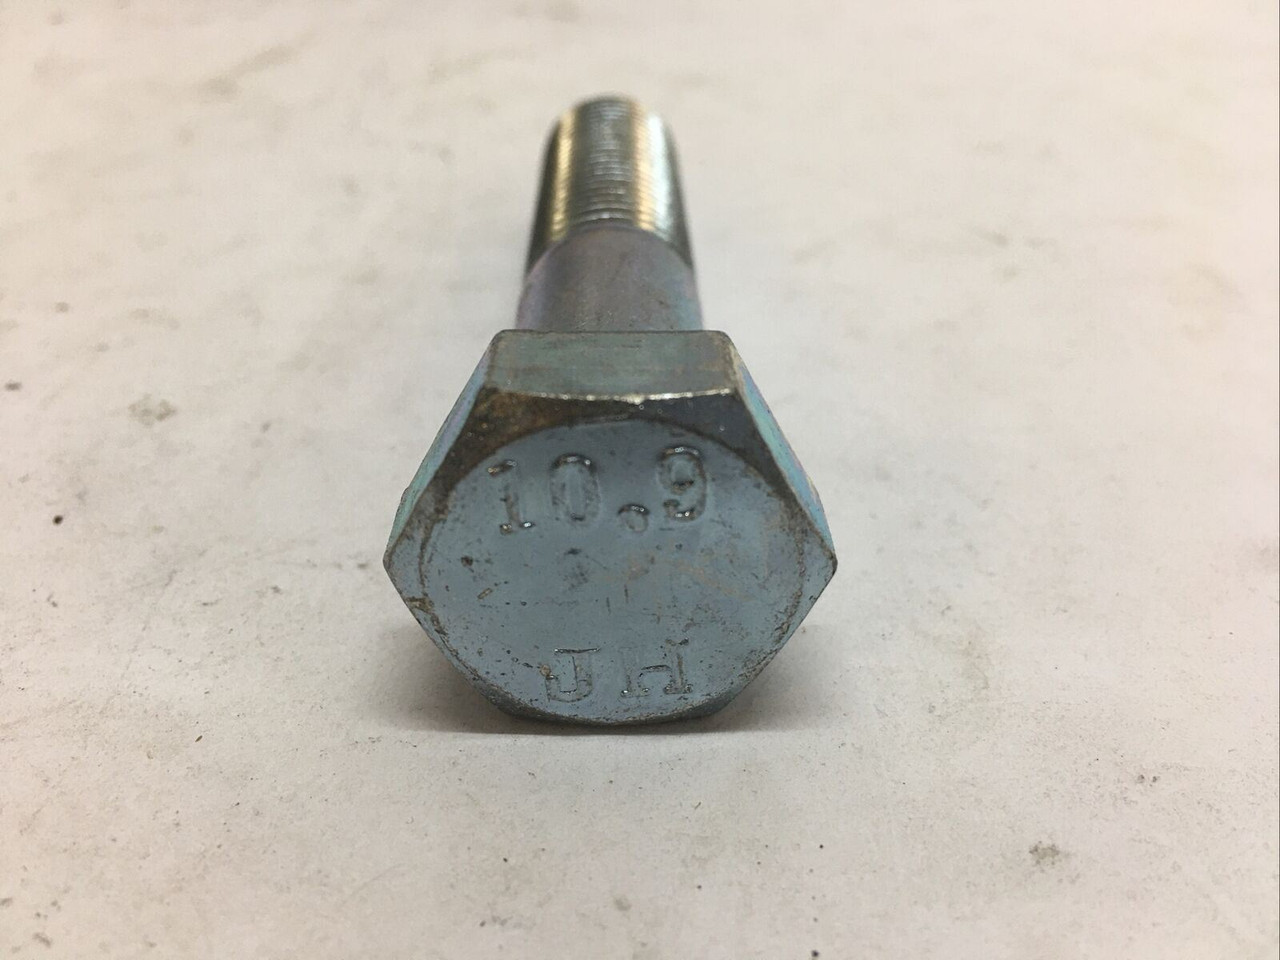 75mm Hexagon Head Cap Screw 5305-01-A21-9120 Lot of 25